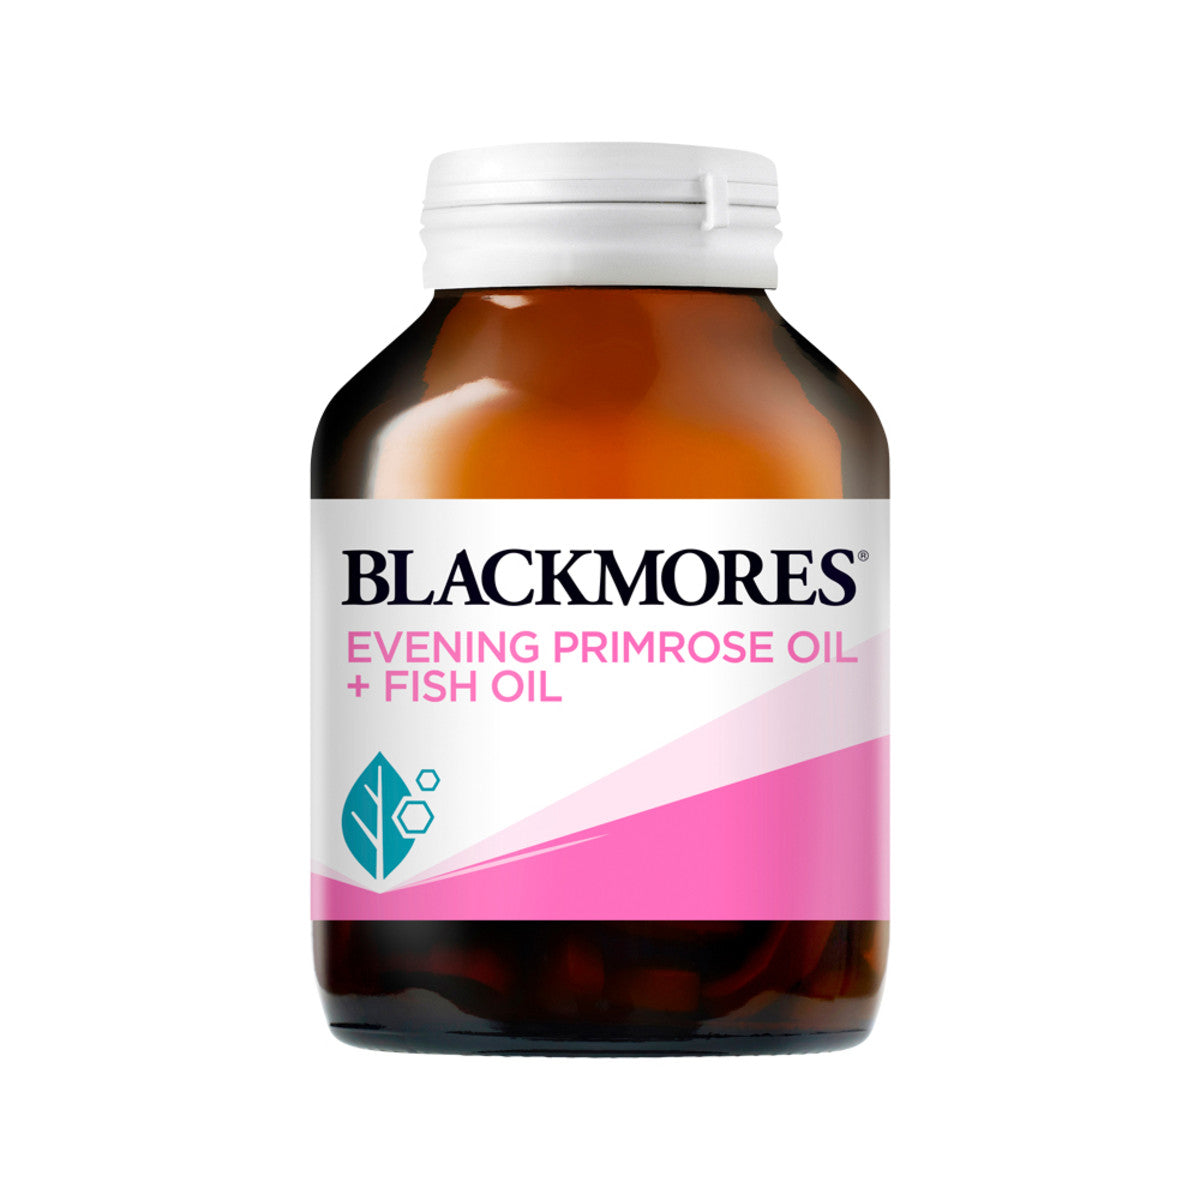 Blackmores - Evening Primrose Oil plus Fish Oil